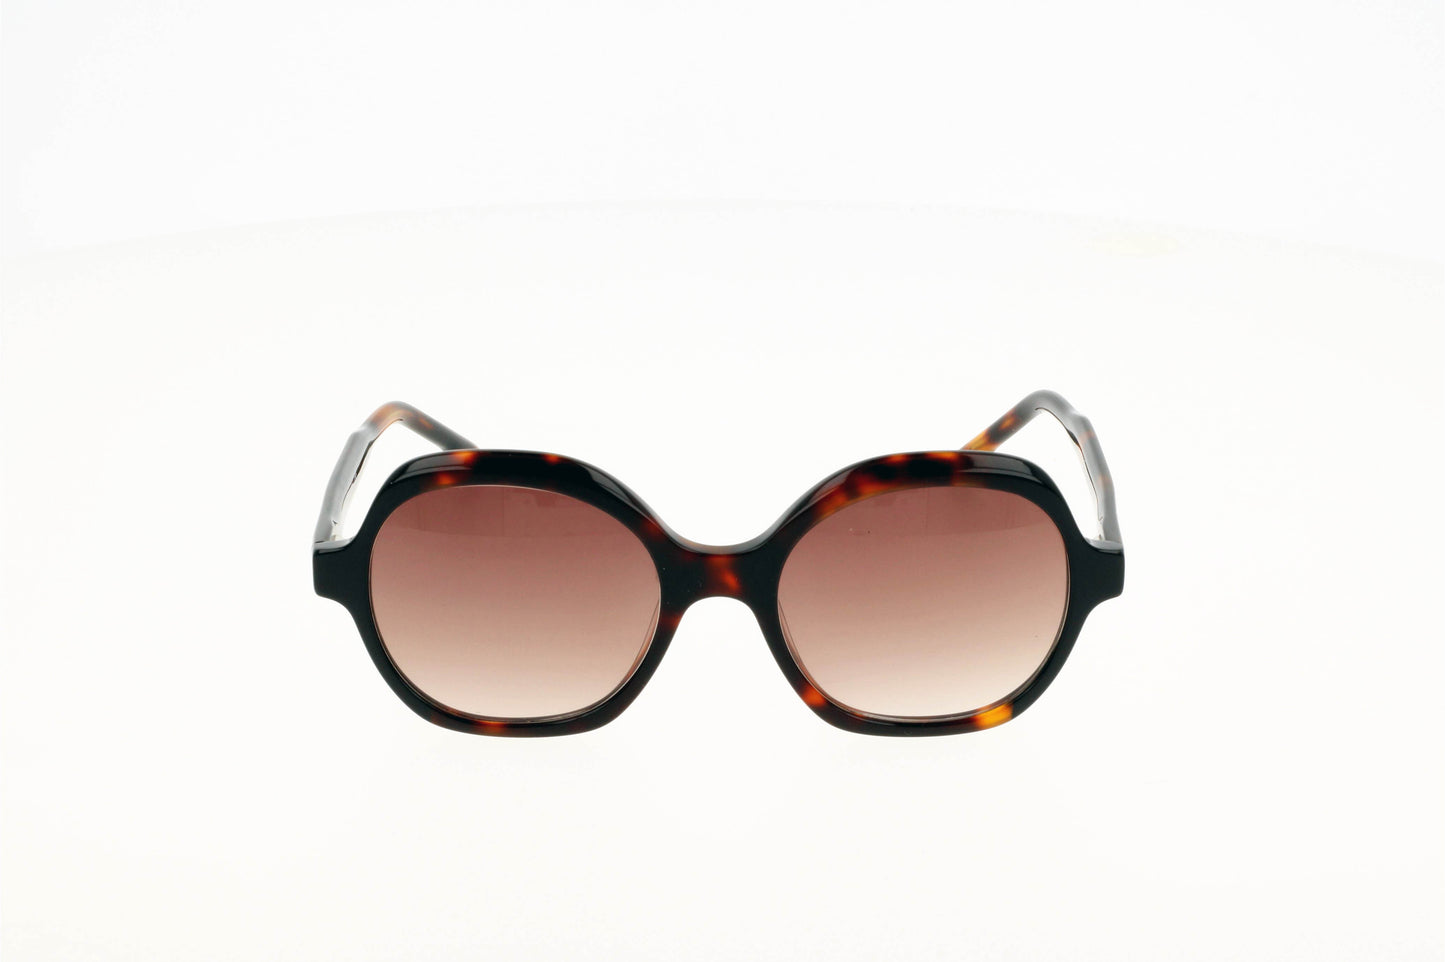 Originel eyewear France vous propose des lunettes de soleil pour femme, de forme oversize et de couleur écaille et noire, elles sont tendances, modernes et originales.